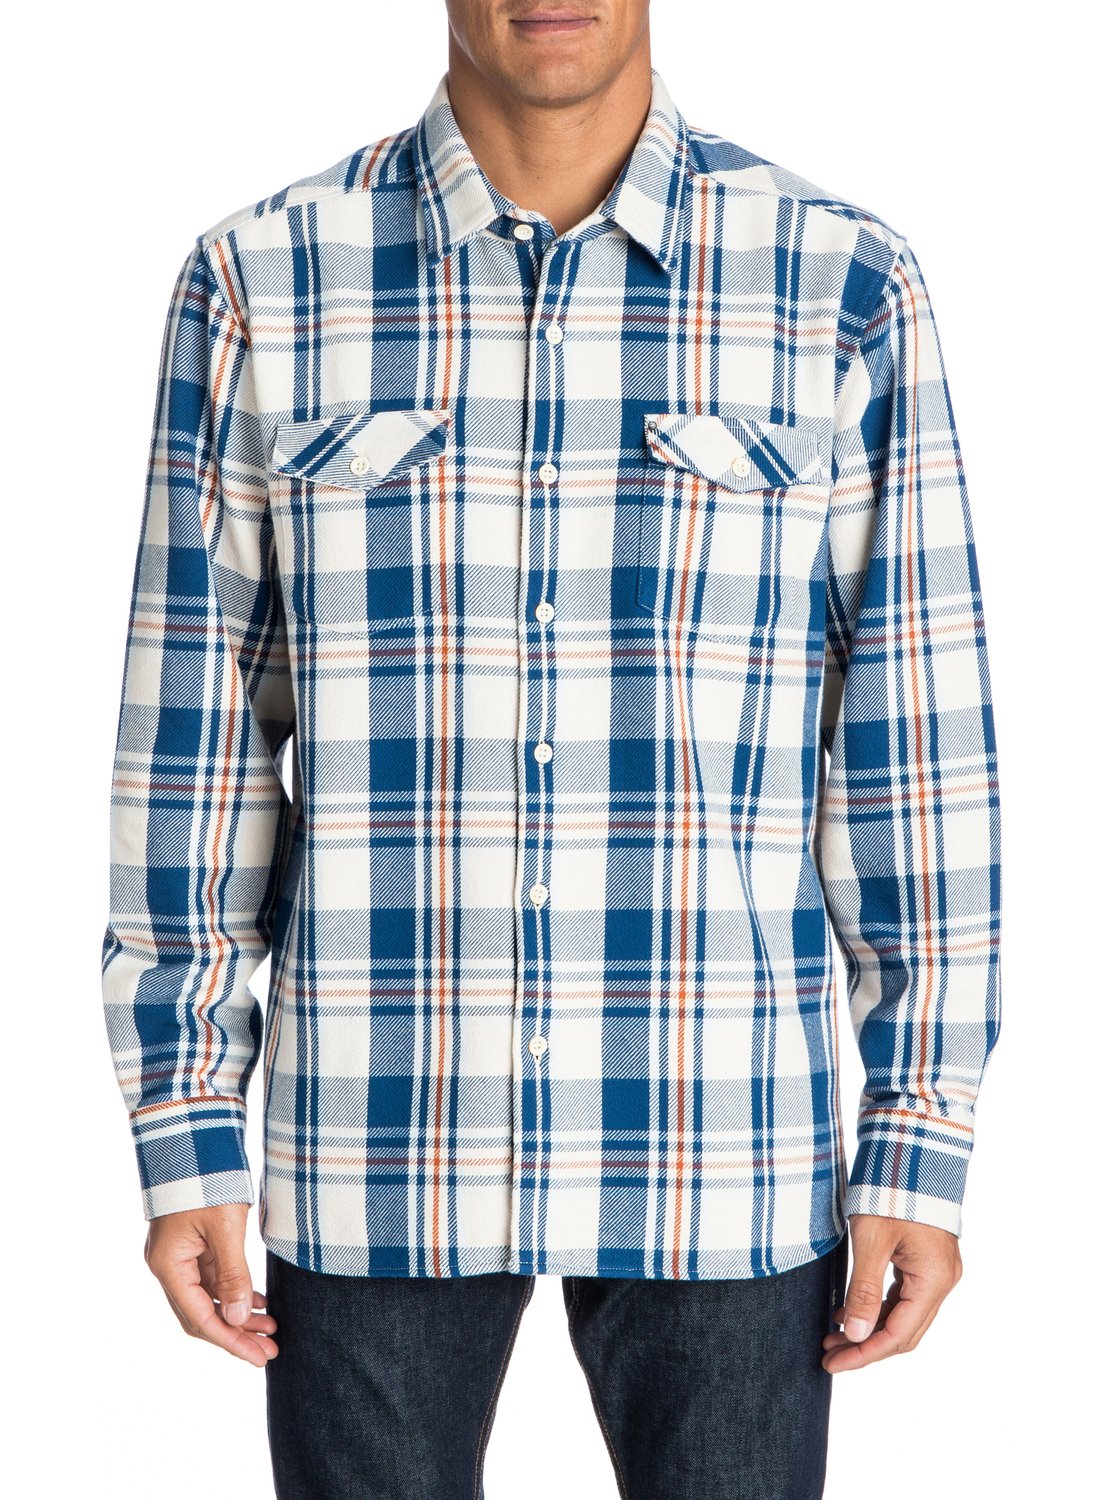 Men's Cedar Island Long Sleeve Shirt 888701417972